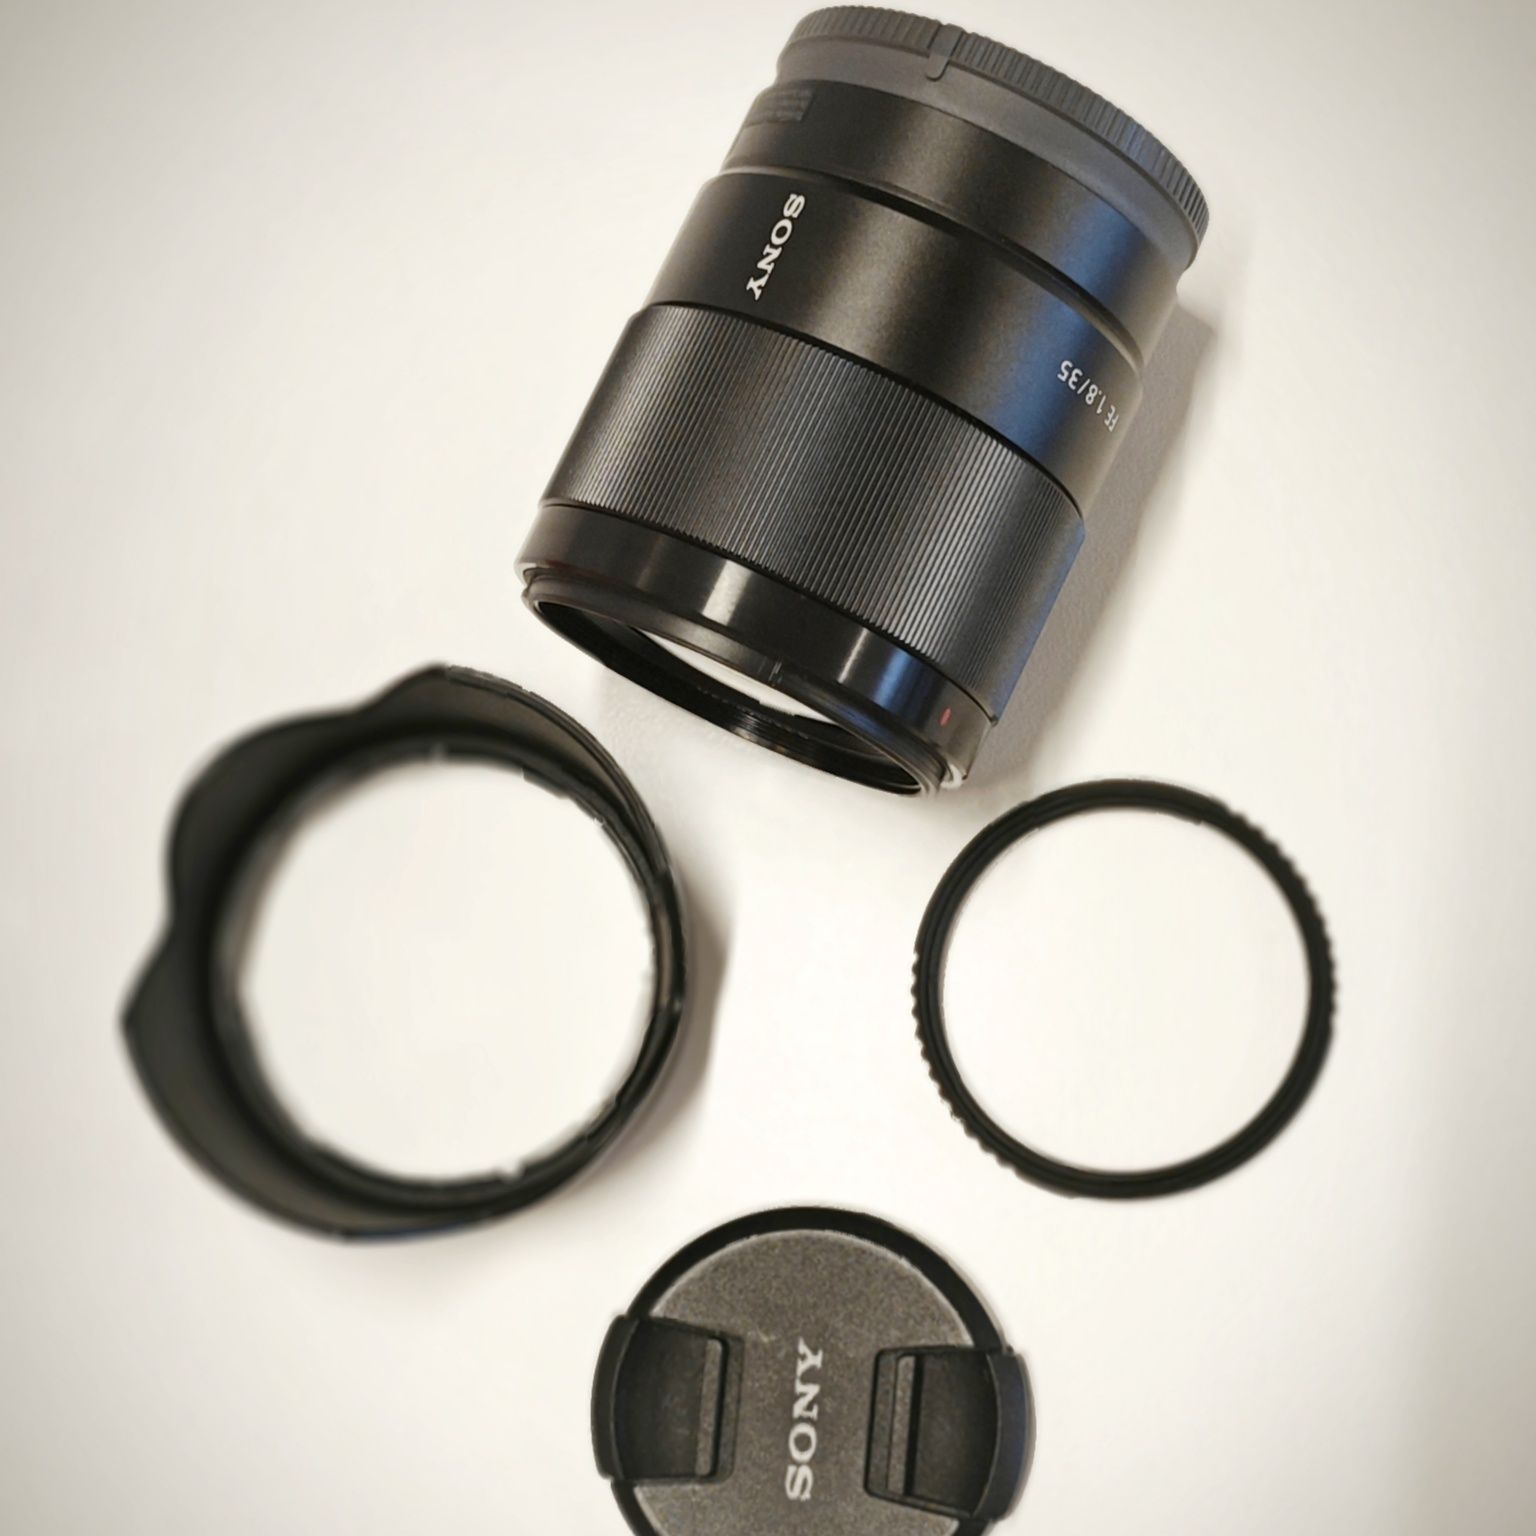 Sony FE 35 mm F1.8 Full-frame Standard Prime Lens